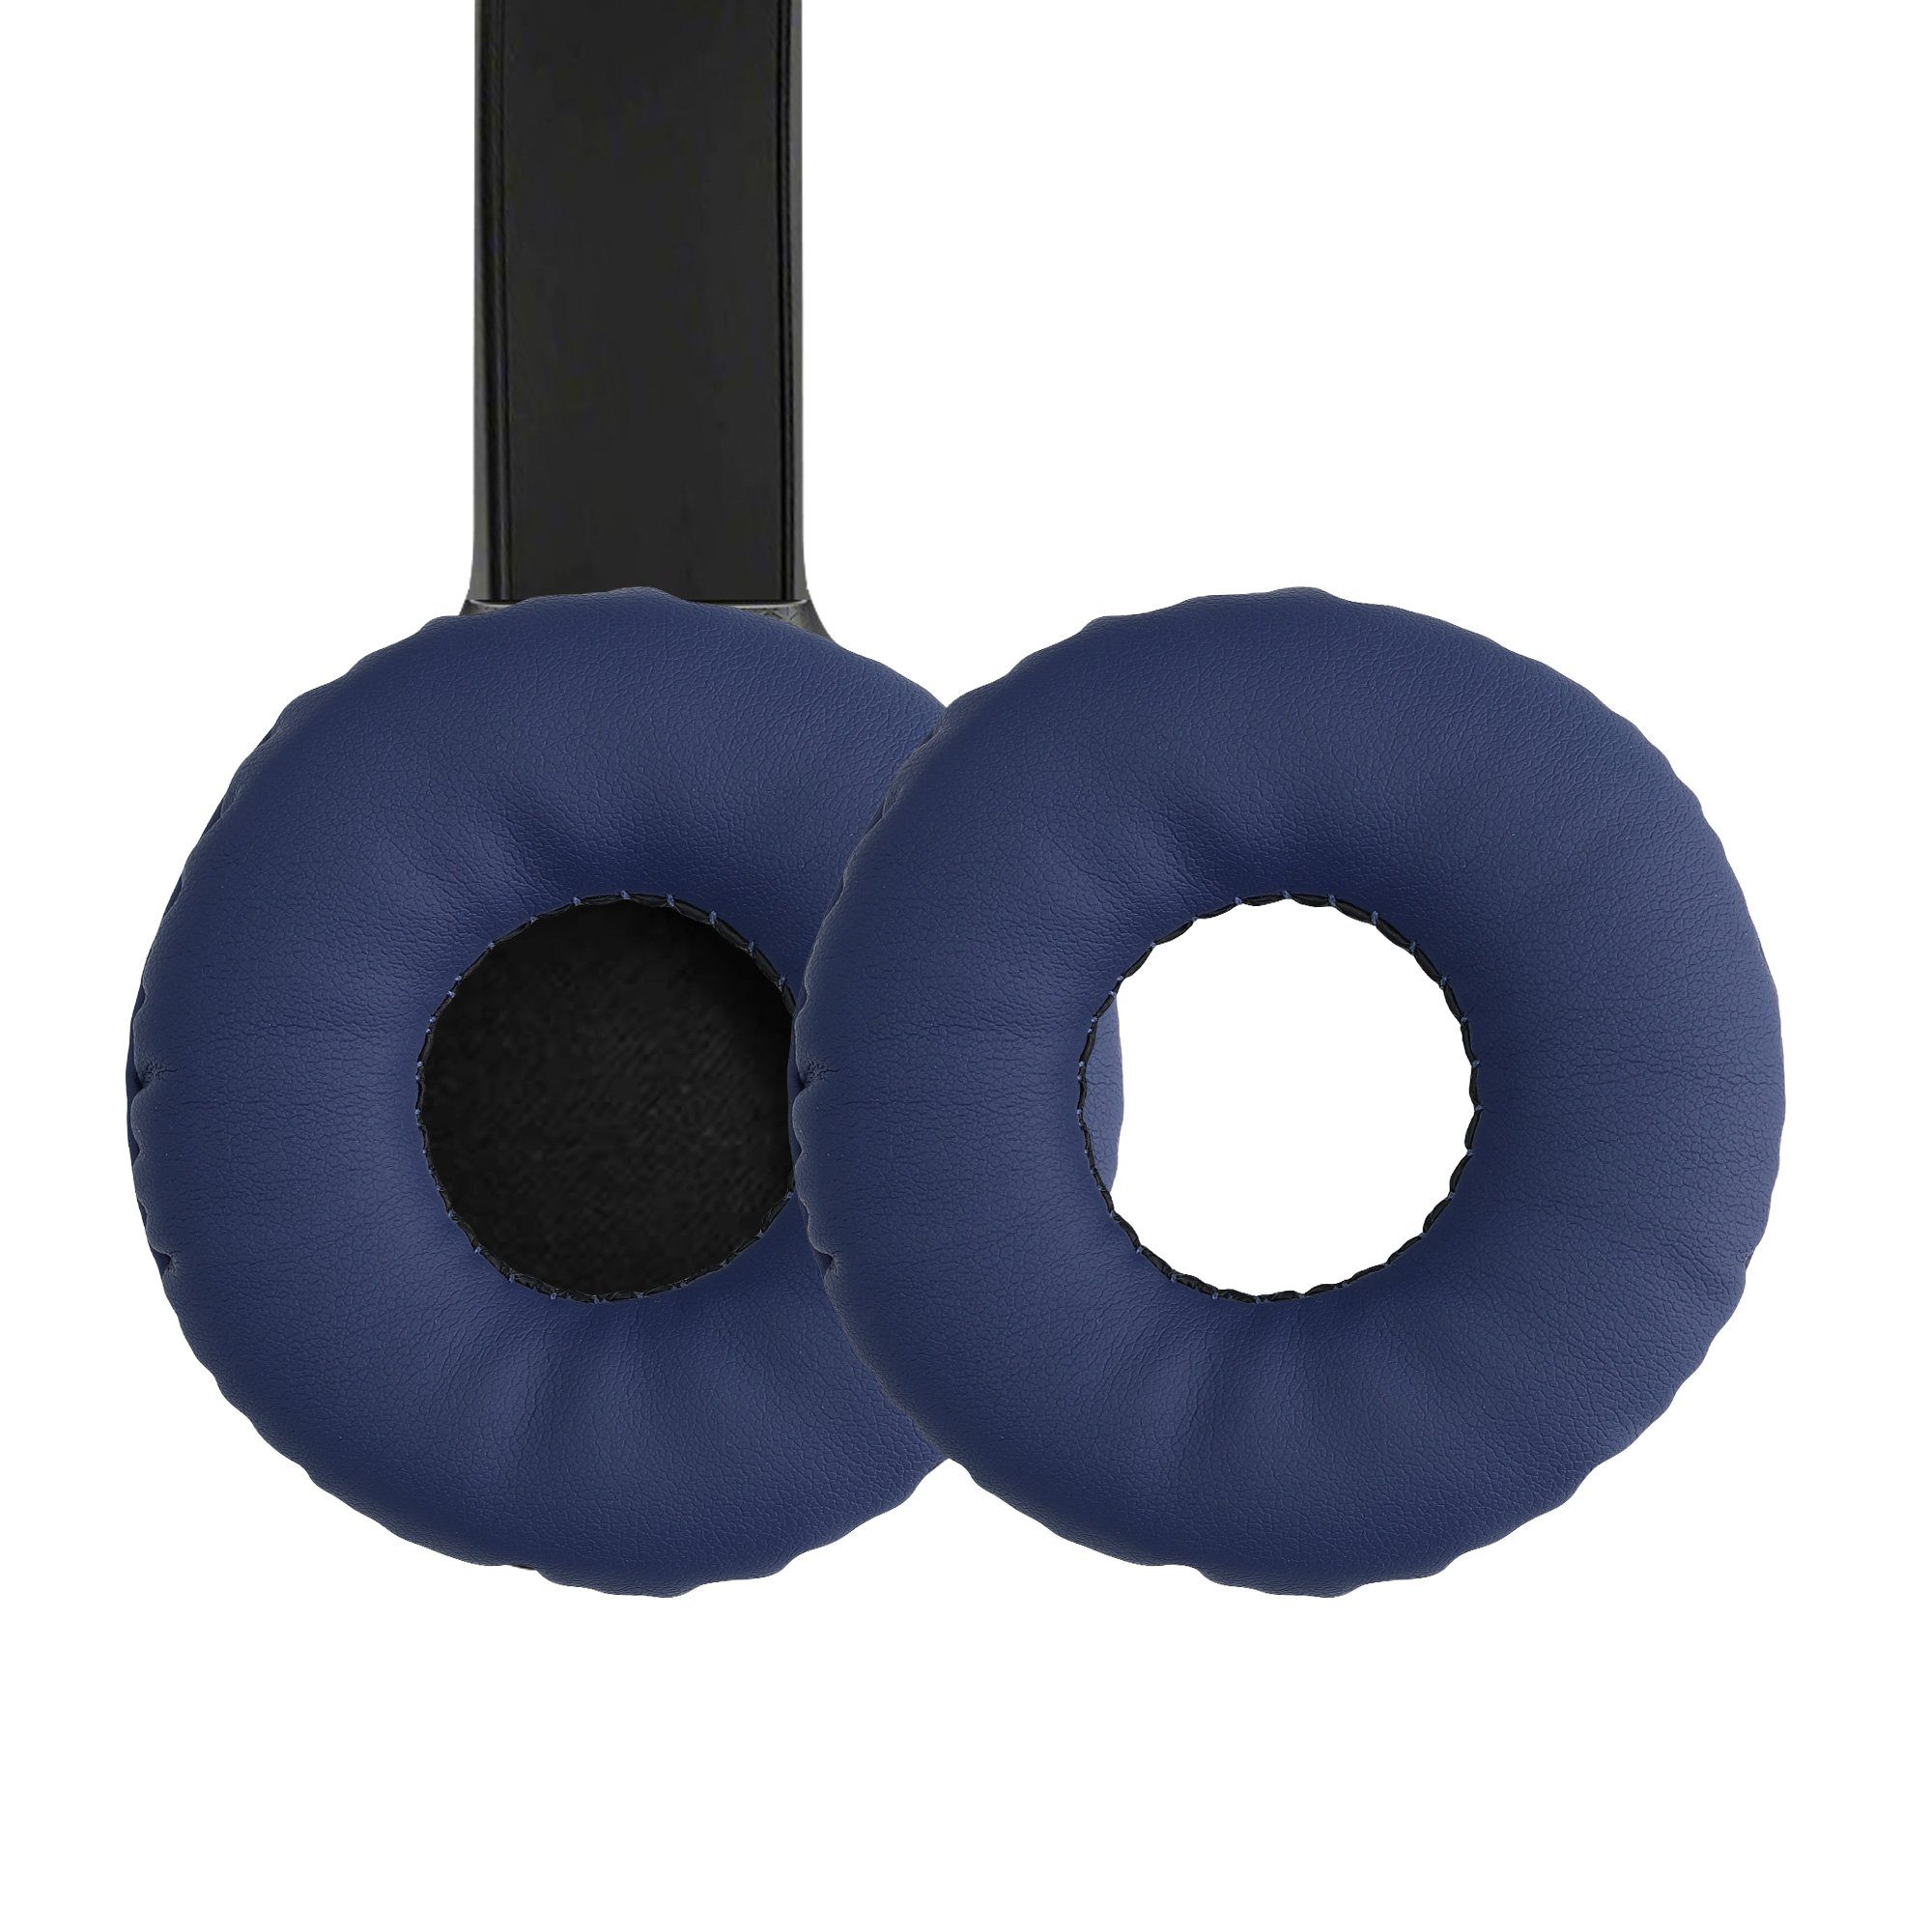 kwmobile 2x Ohr Polster für Sony WH-CH510 Ohrpolster (Ohrpolster Kopfhörer - Kunstleder Polster für Over Ear Headphones) Blau